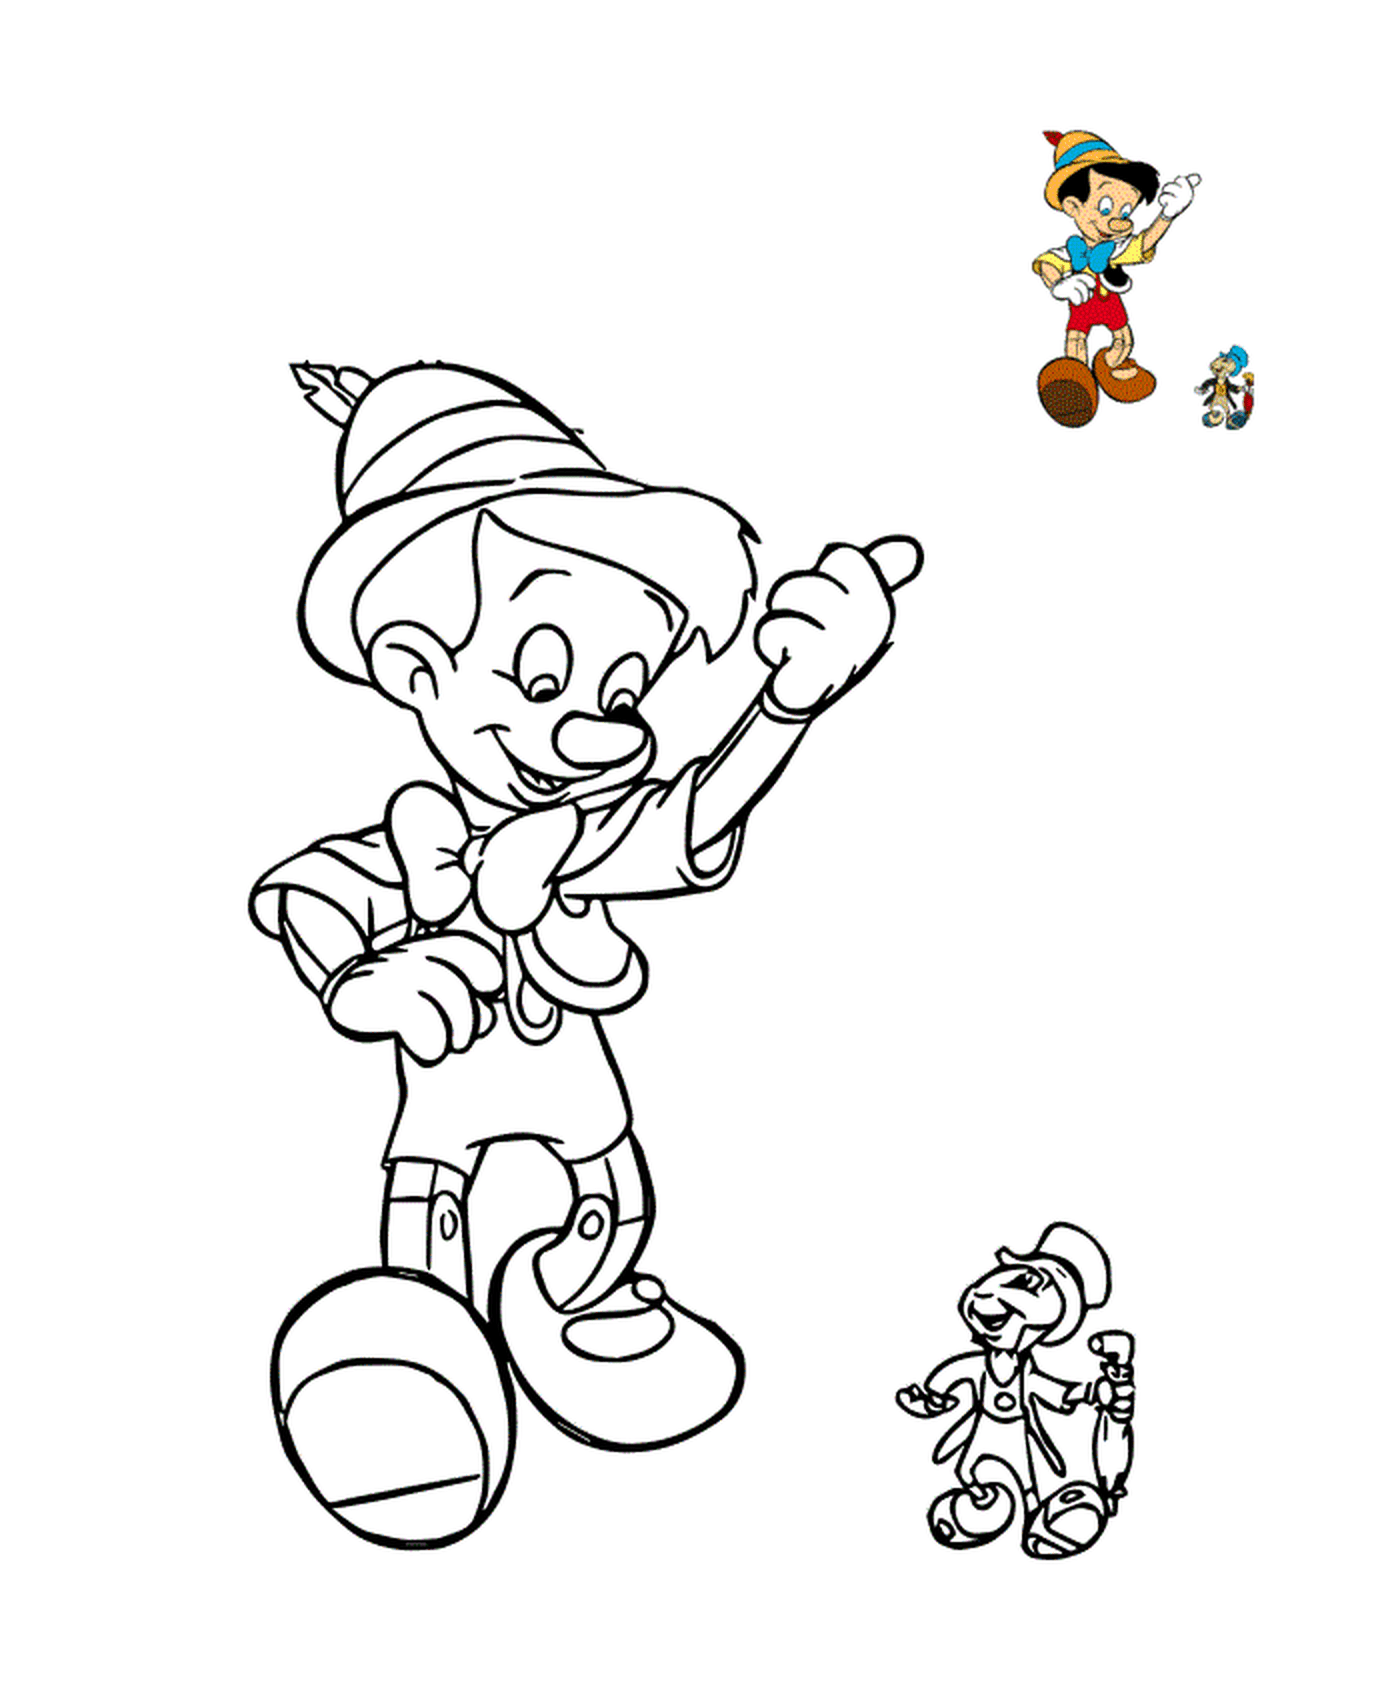  Pinocho y Jiminy Cricket, compañeros 